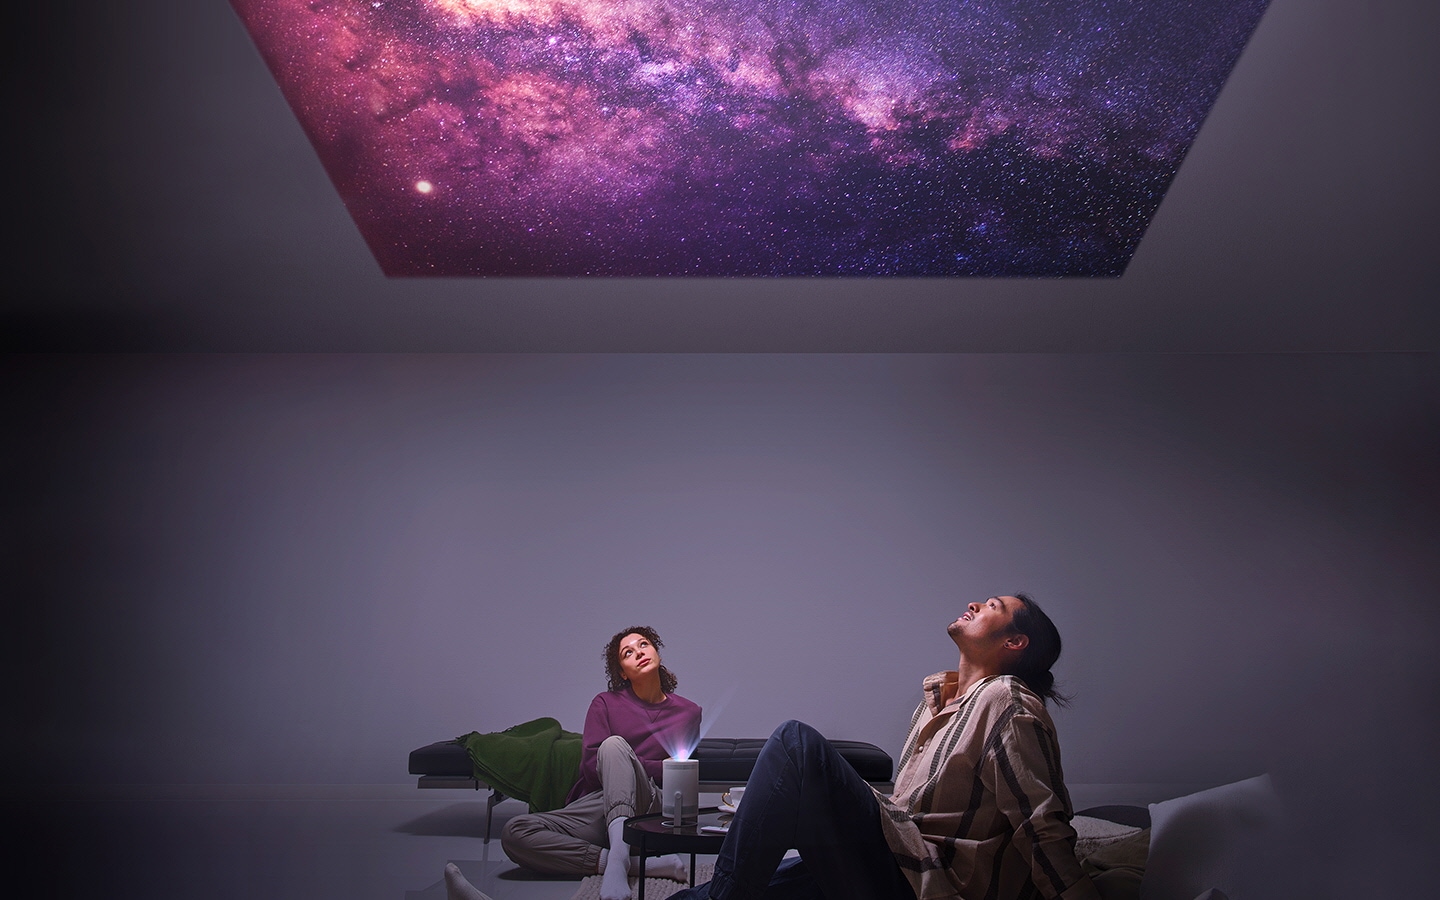 ผู้ชายกับผู้หญิงนั่งจ้องดูดาวที่ฉายอยู่บนเพดานจาก The Freestyle